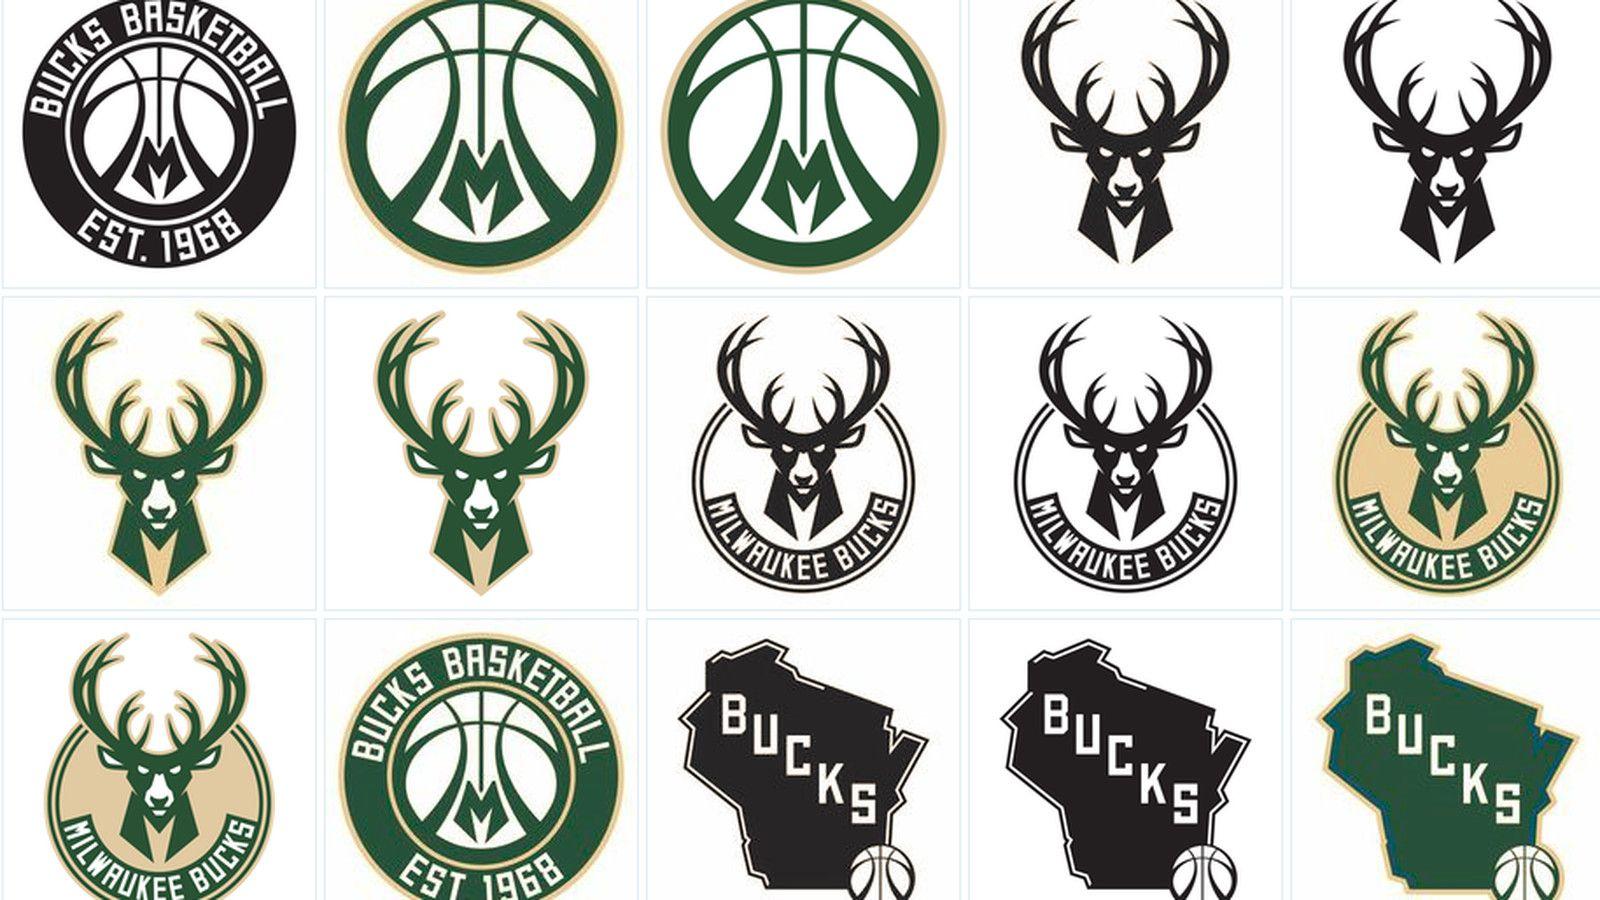 Bucks Logo - Inside the Bucks' logo redesign